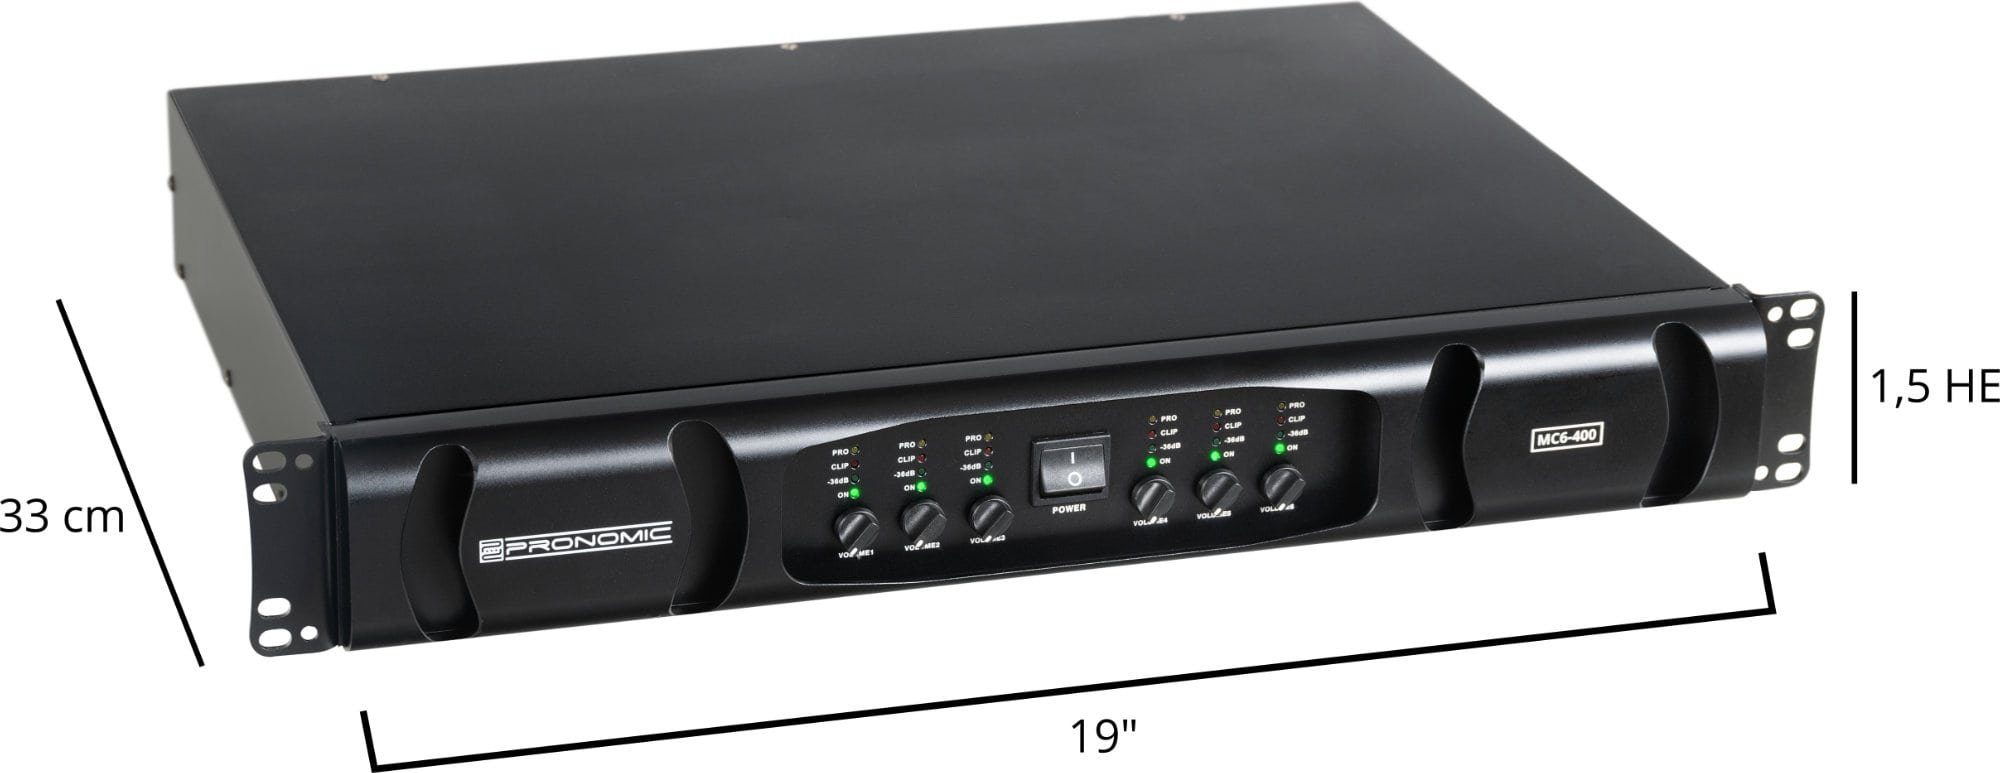 Kanäle: Endstufe Audioverstärker MC6-400 mit 6x Schaltung & Grenzfrequenz) flexibler 600 W, Pronomic Watt 3600 (Anzahl einstellbarer Endstufe 6,